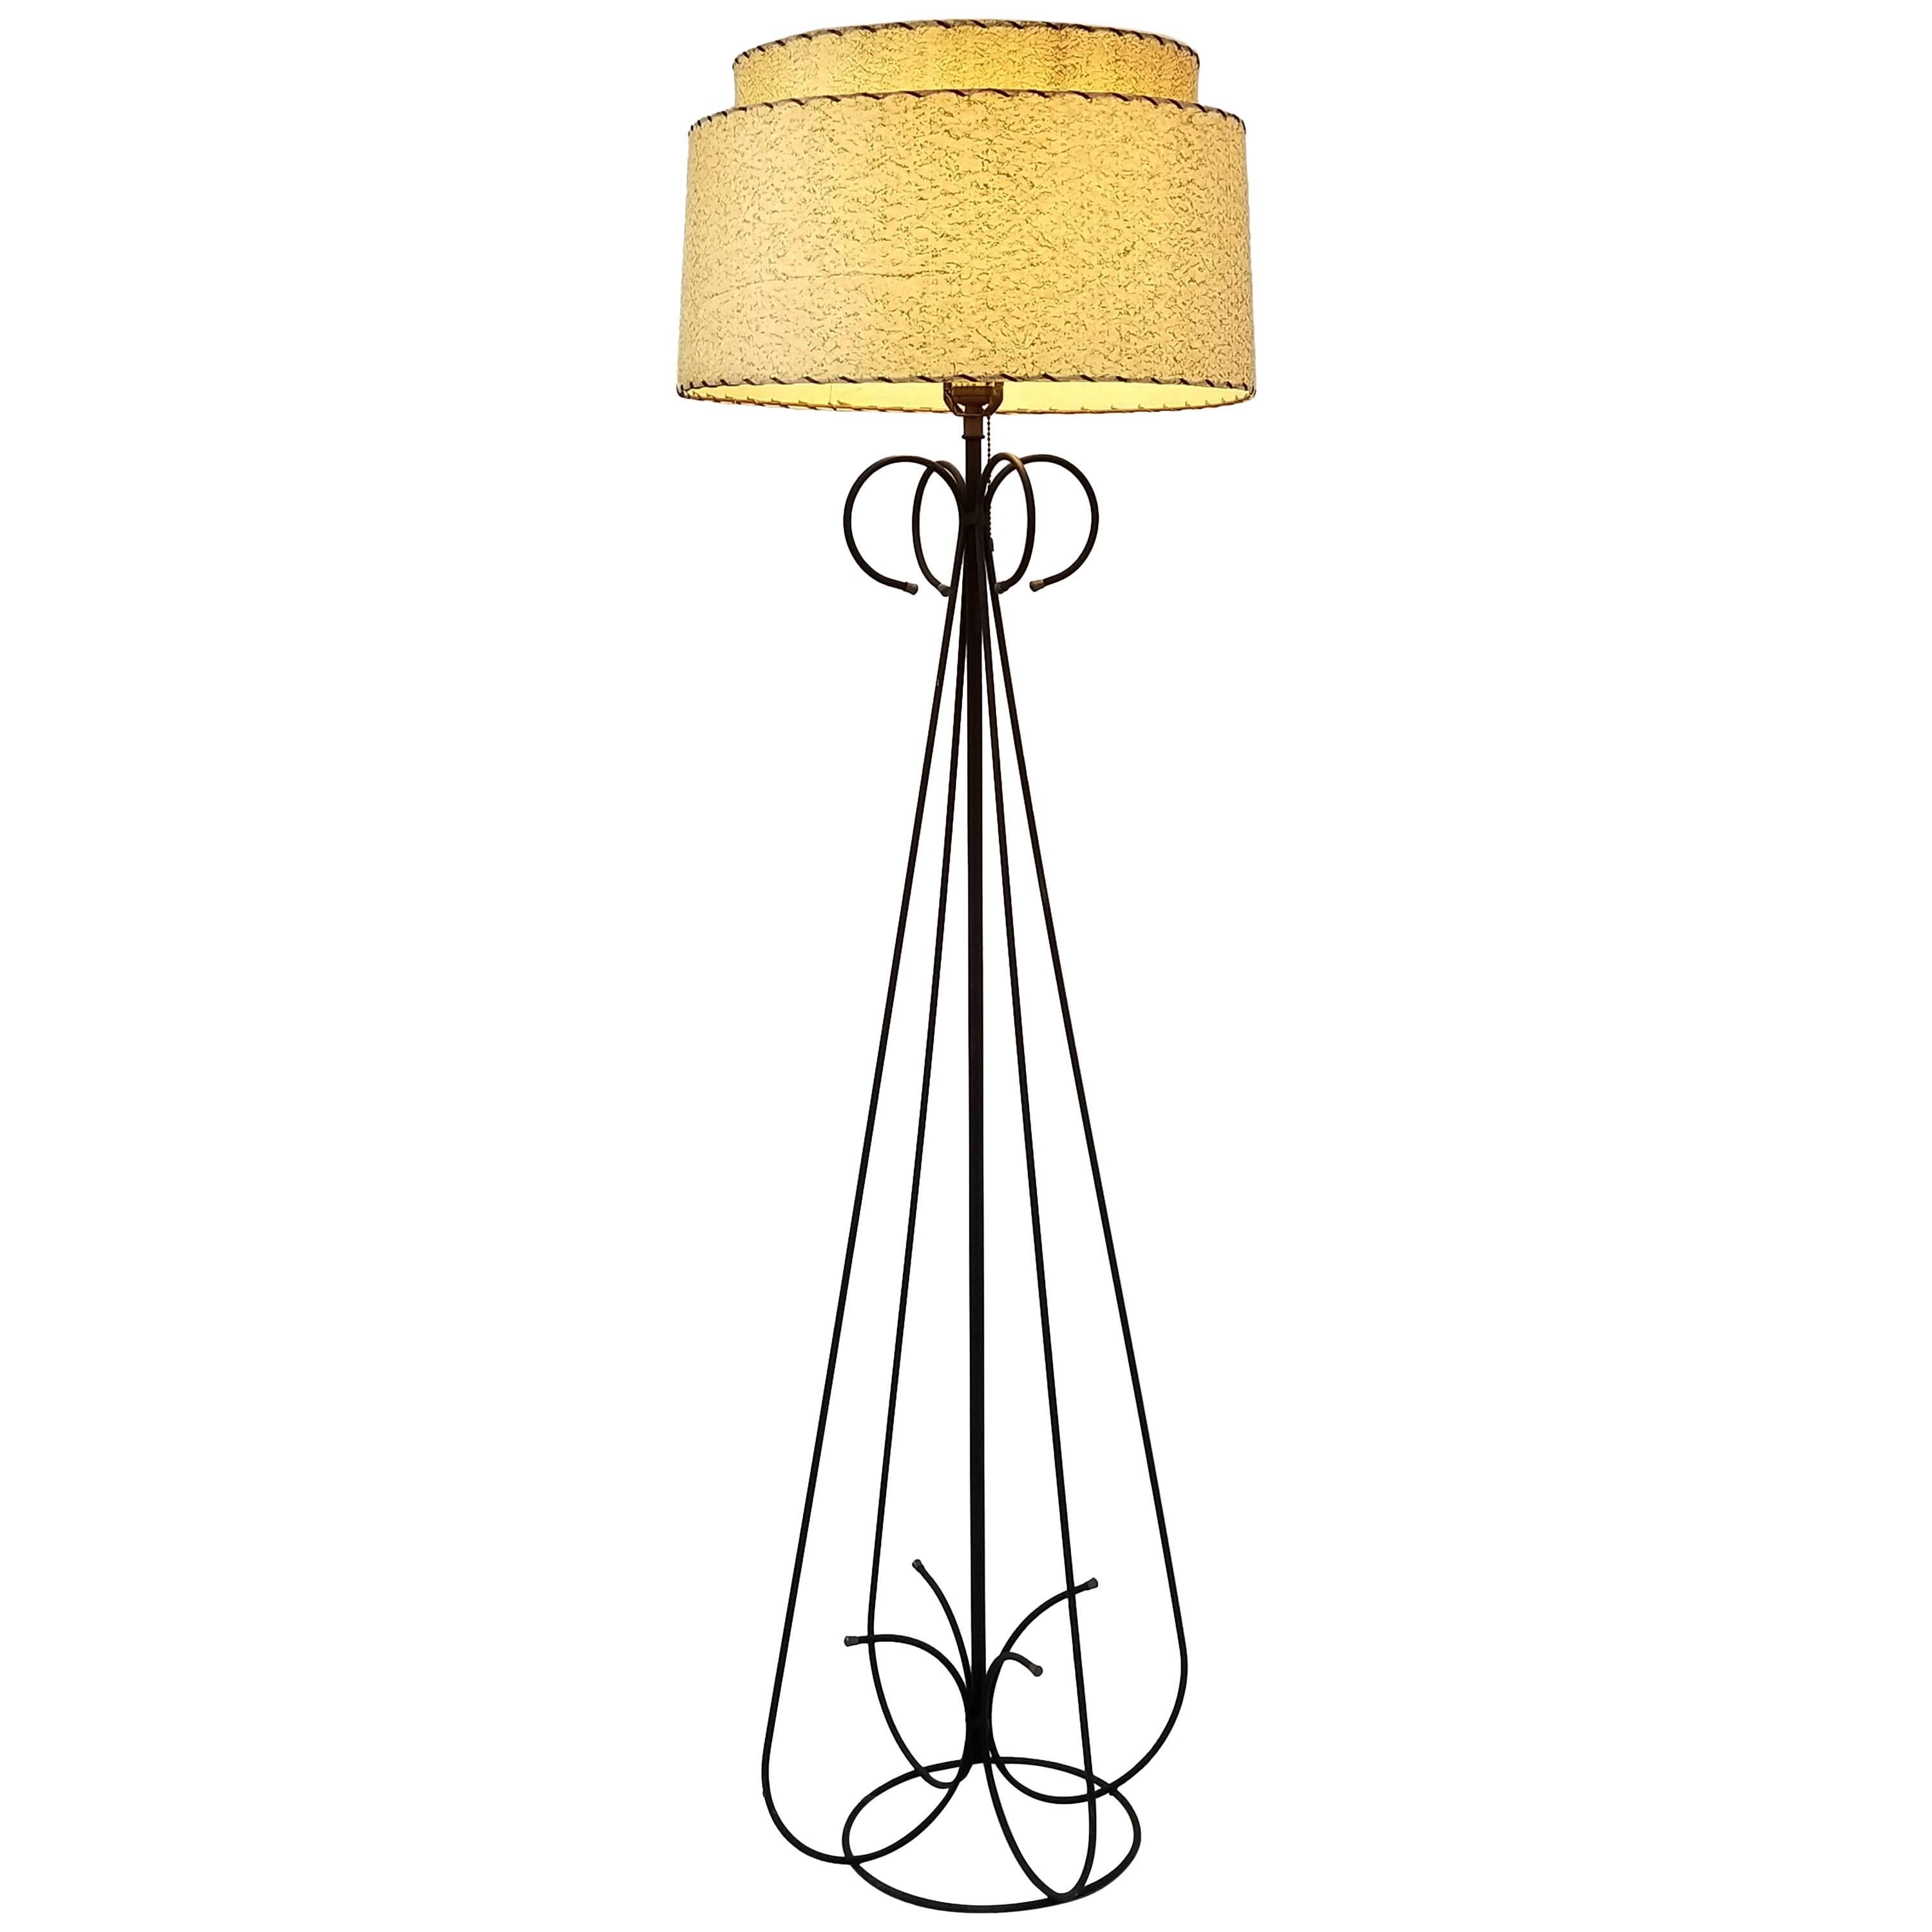 Stehlampe aus Draht aus den 1950er Jahren im Stil von Tony Paul, USA